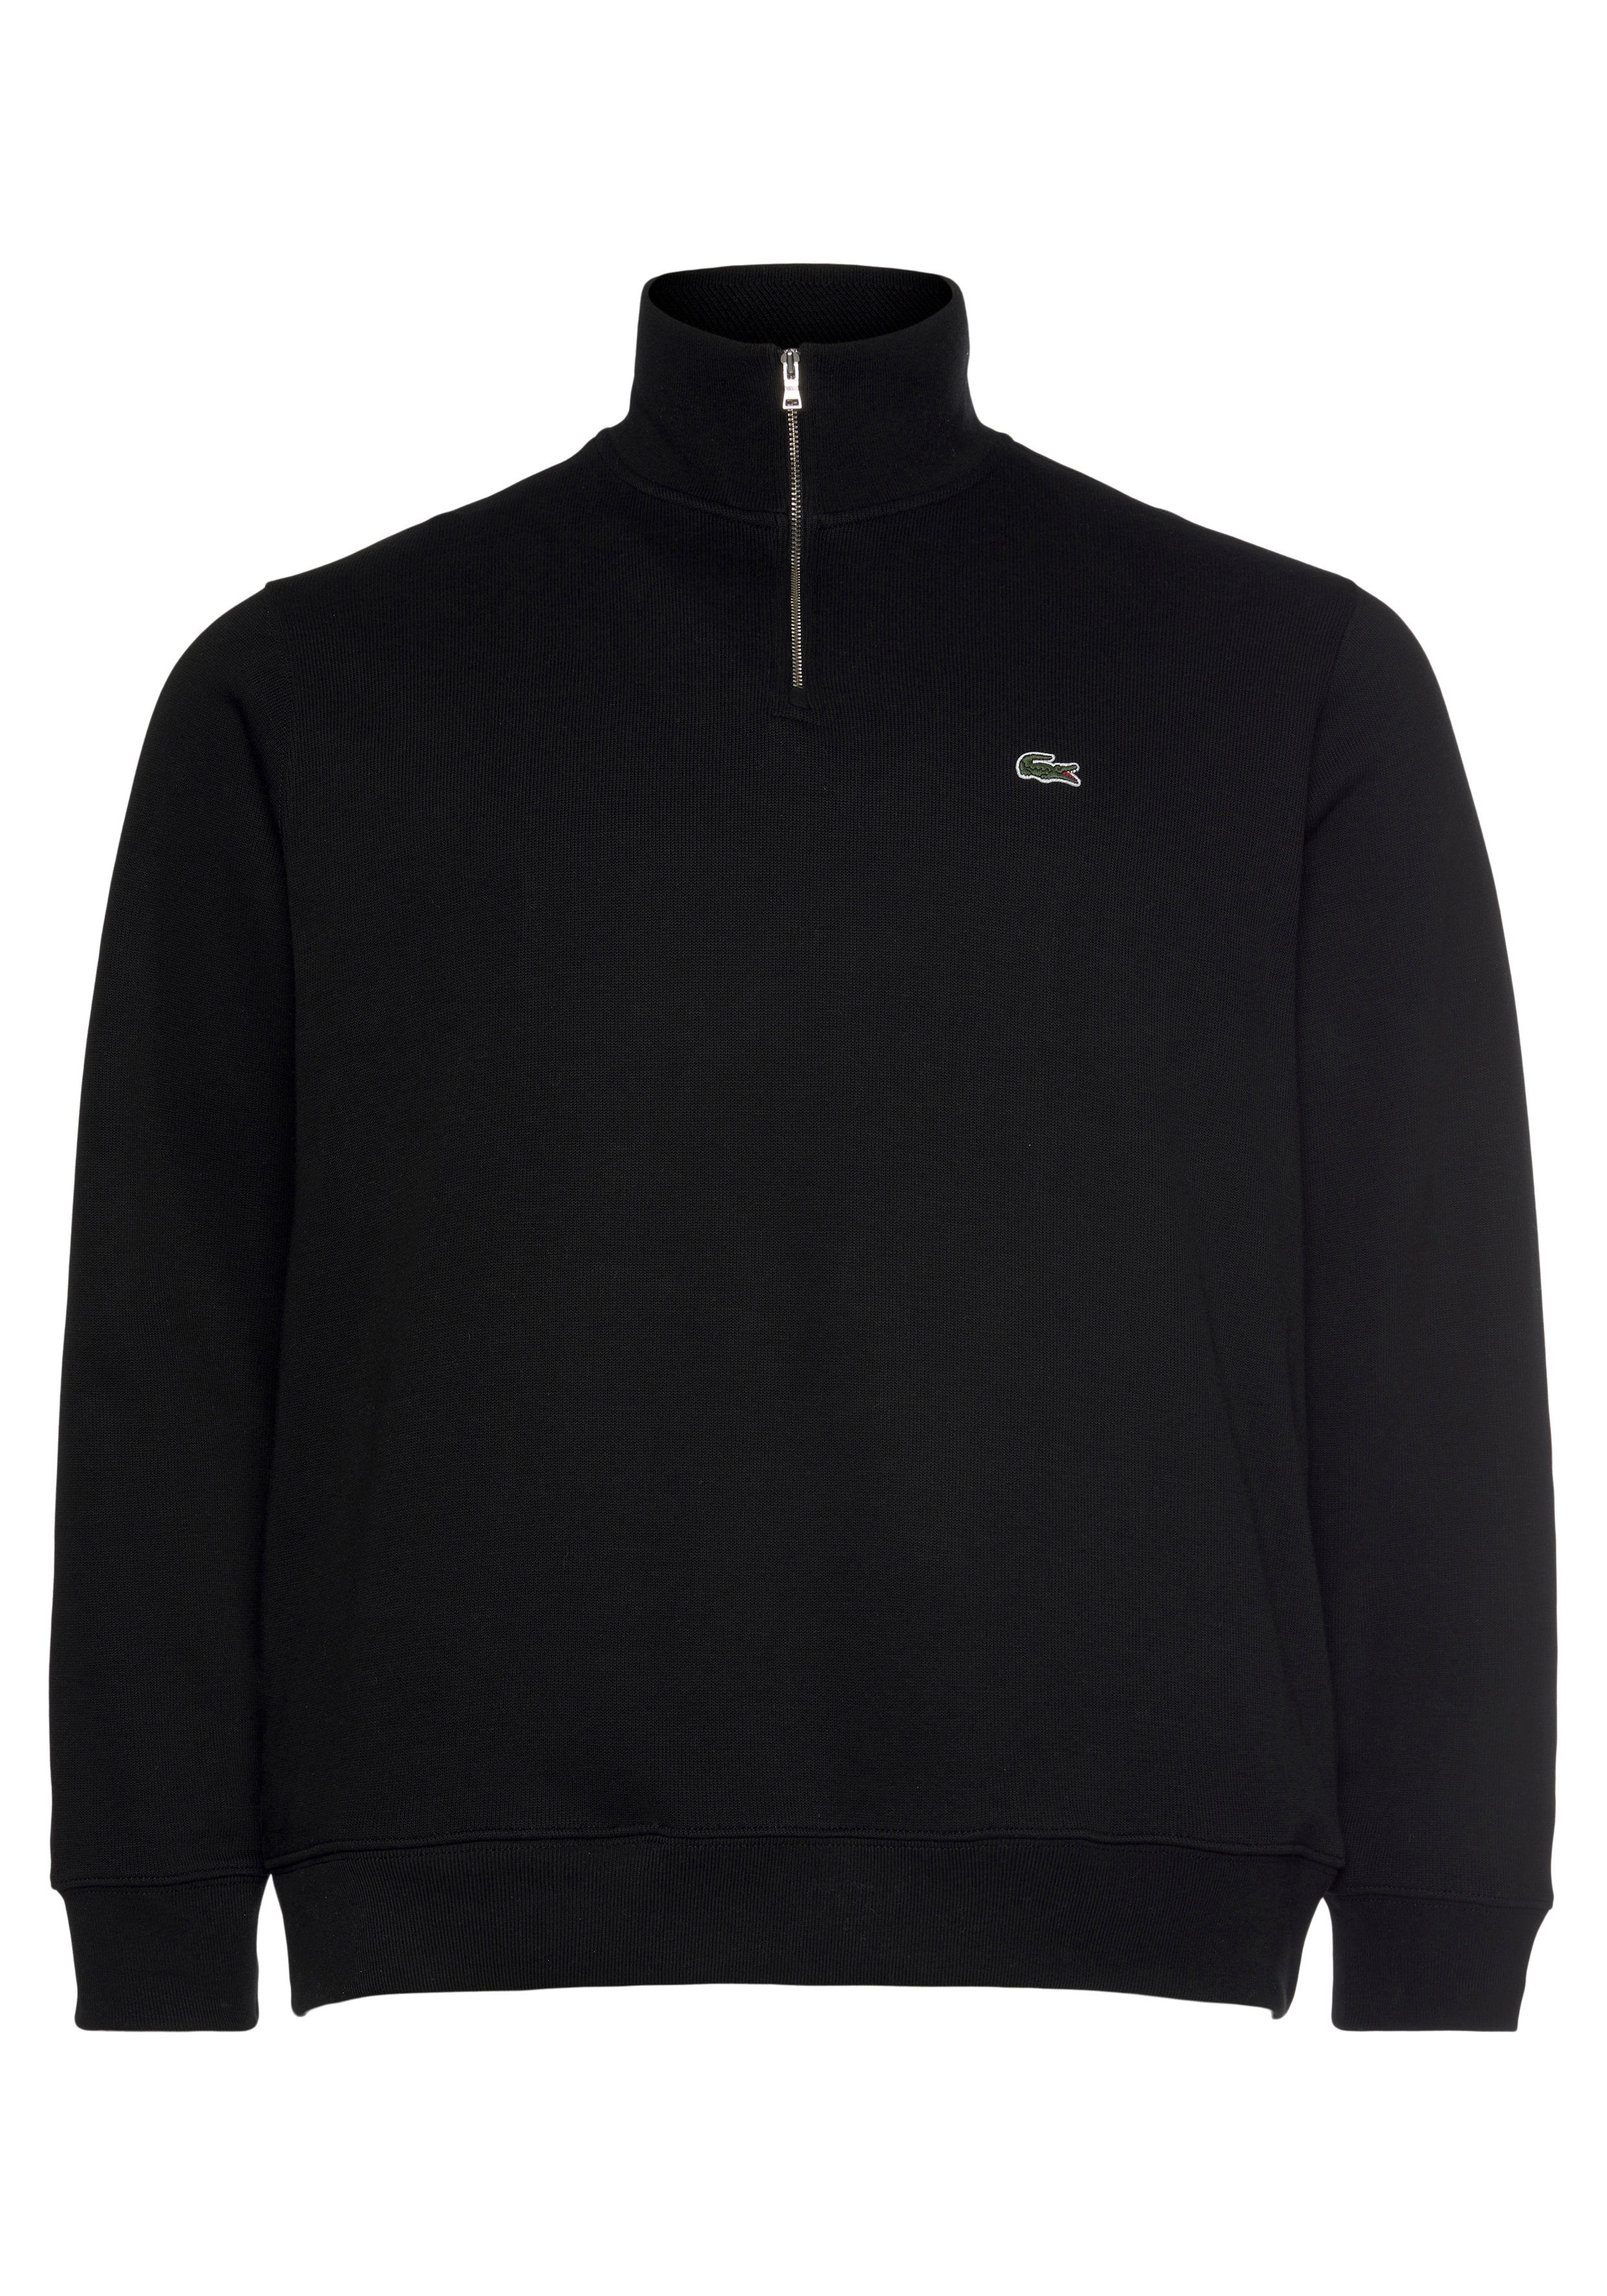 Lacoste Sweatshirt mit Sweattroyer Stehkragen black